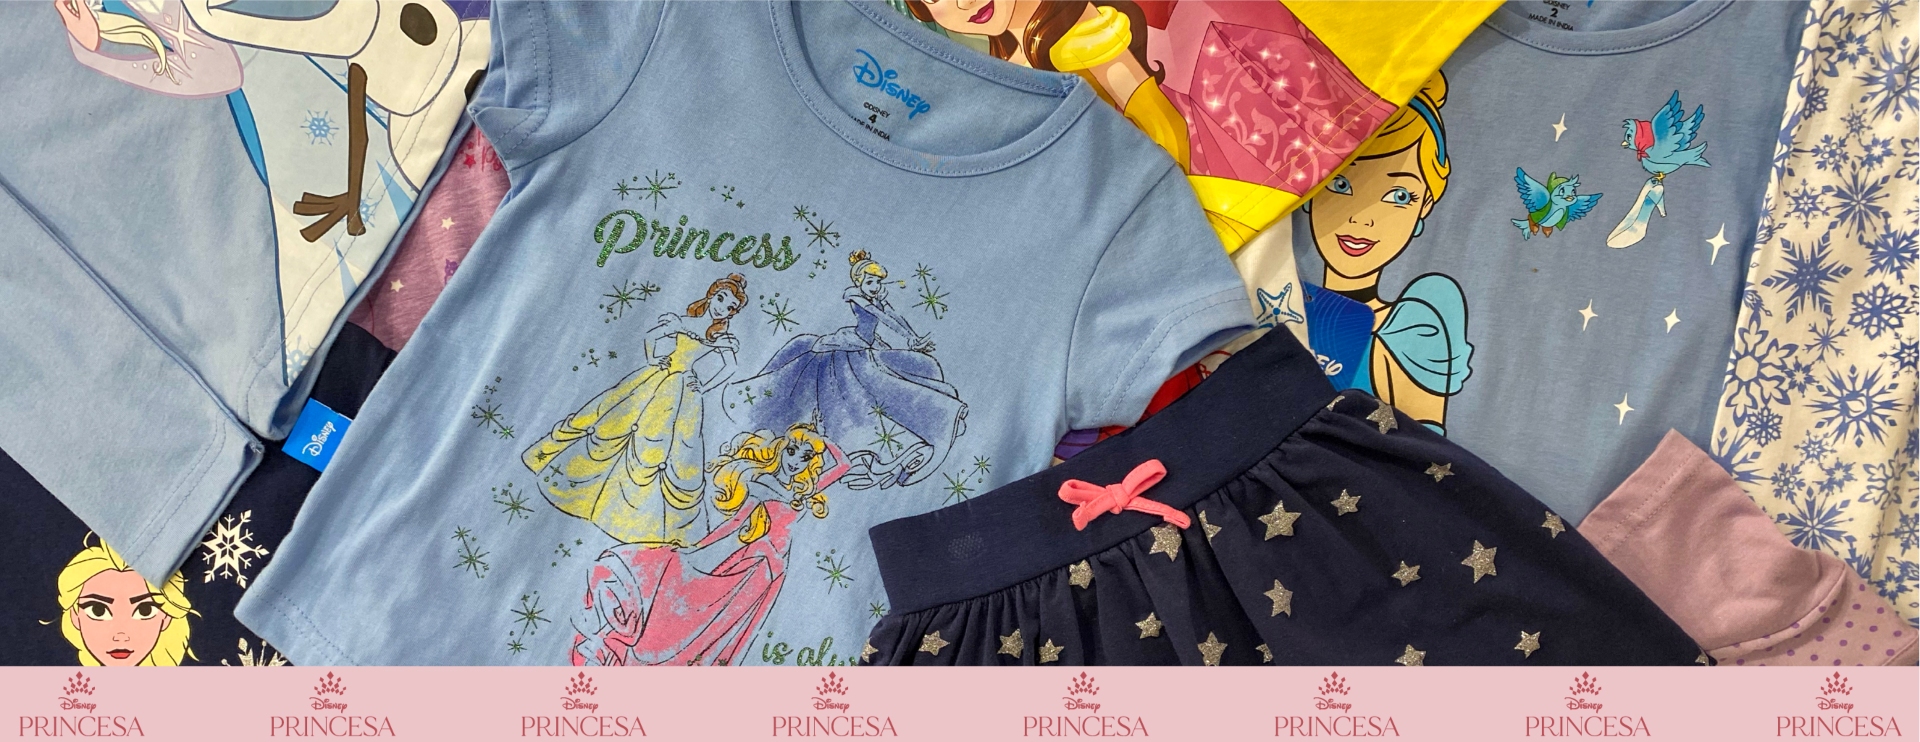 Ropa-Disney-princesas-niñas-Apolo